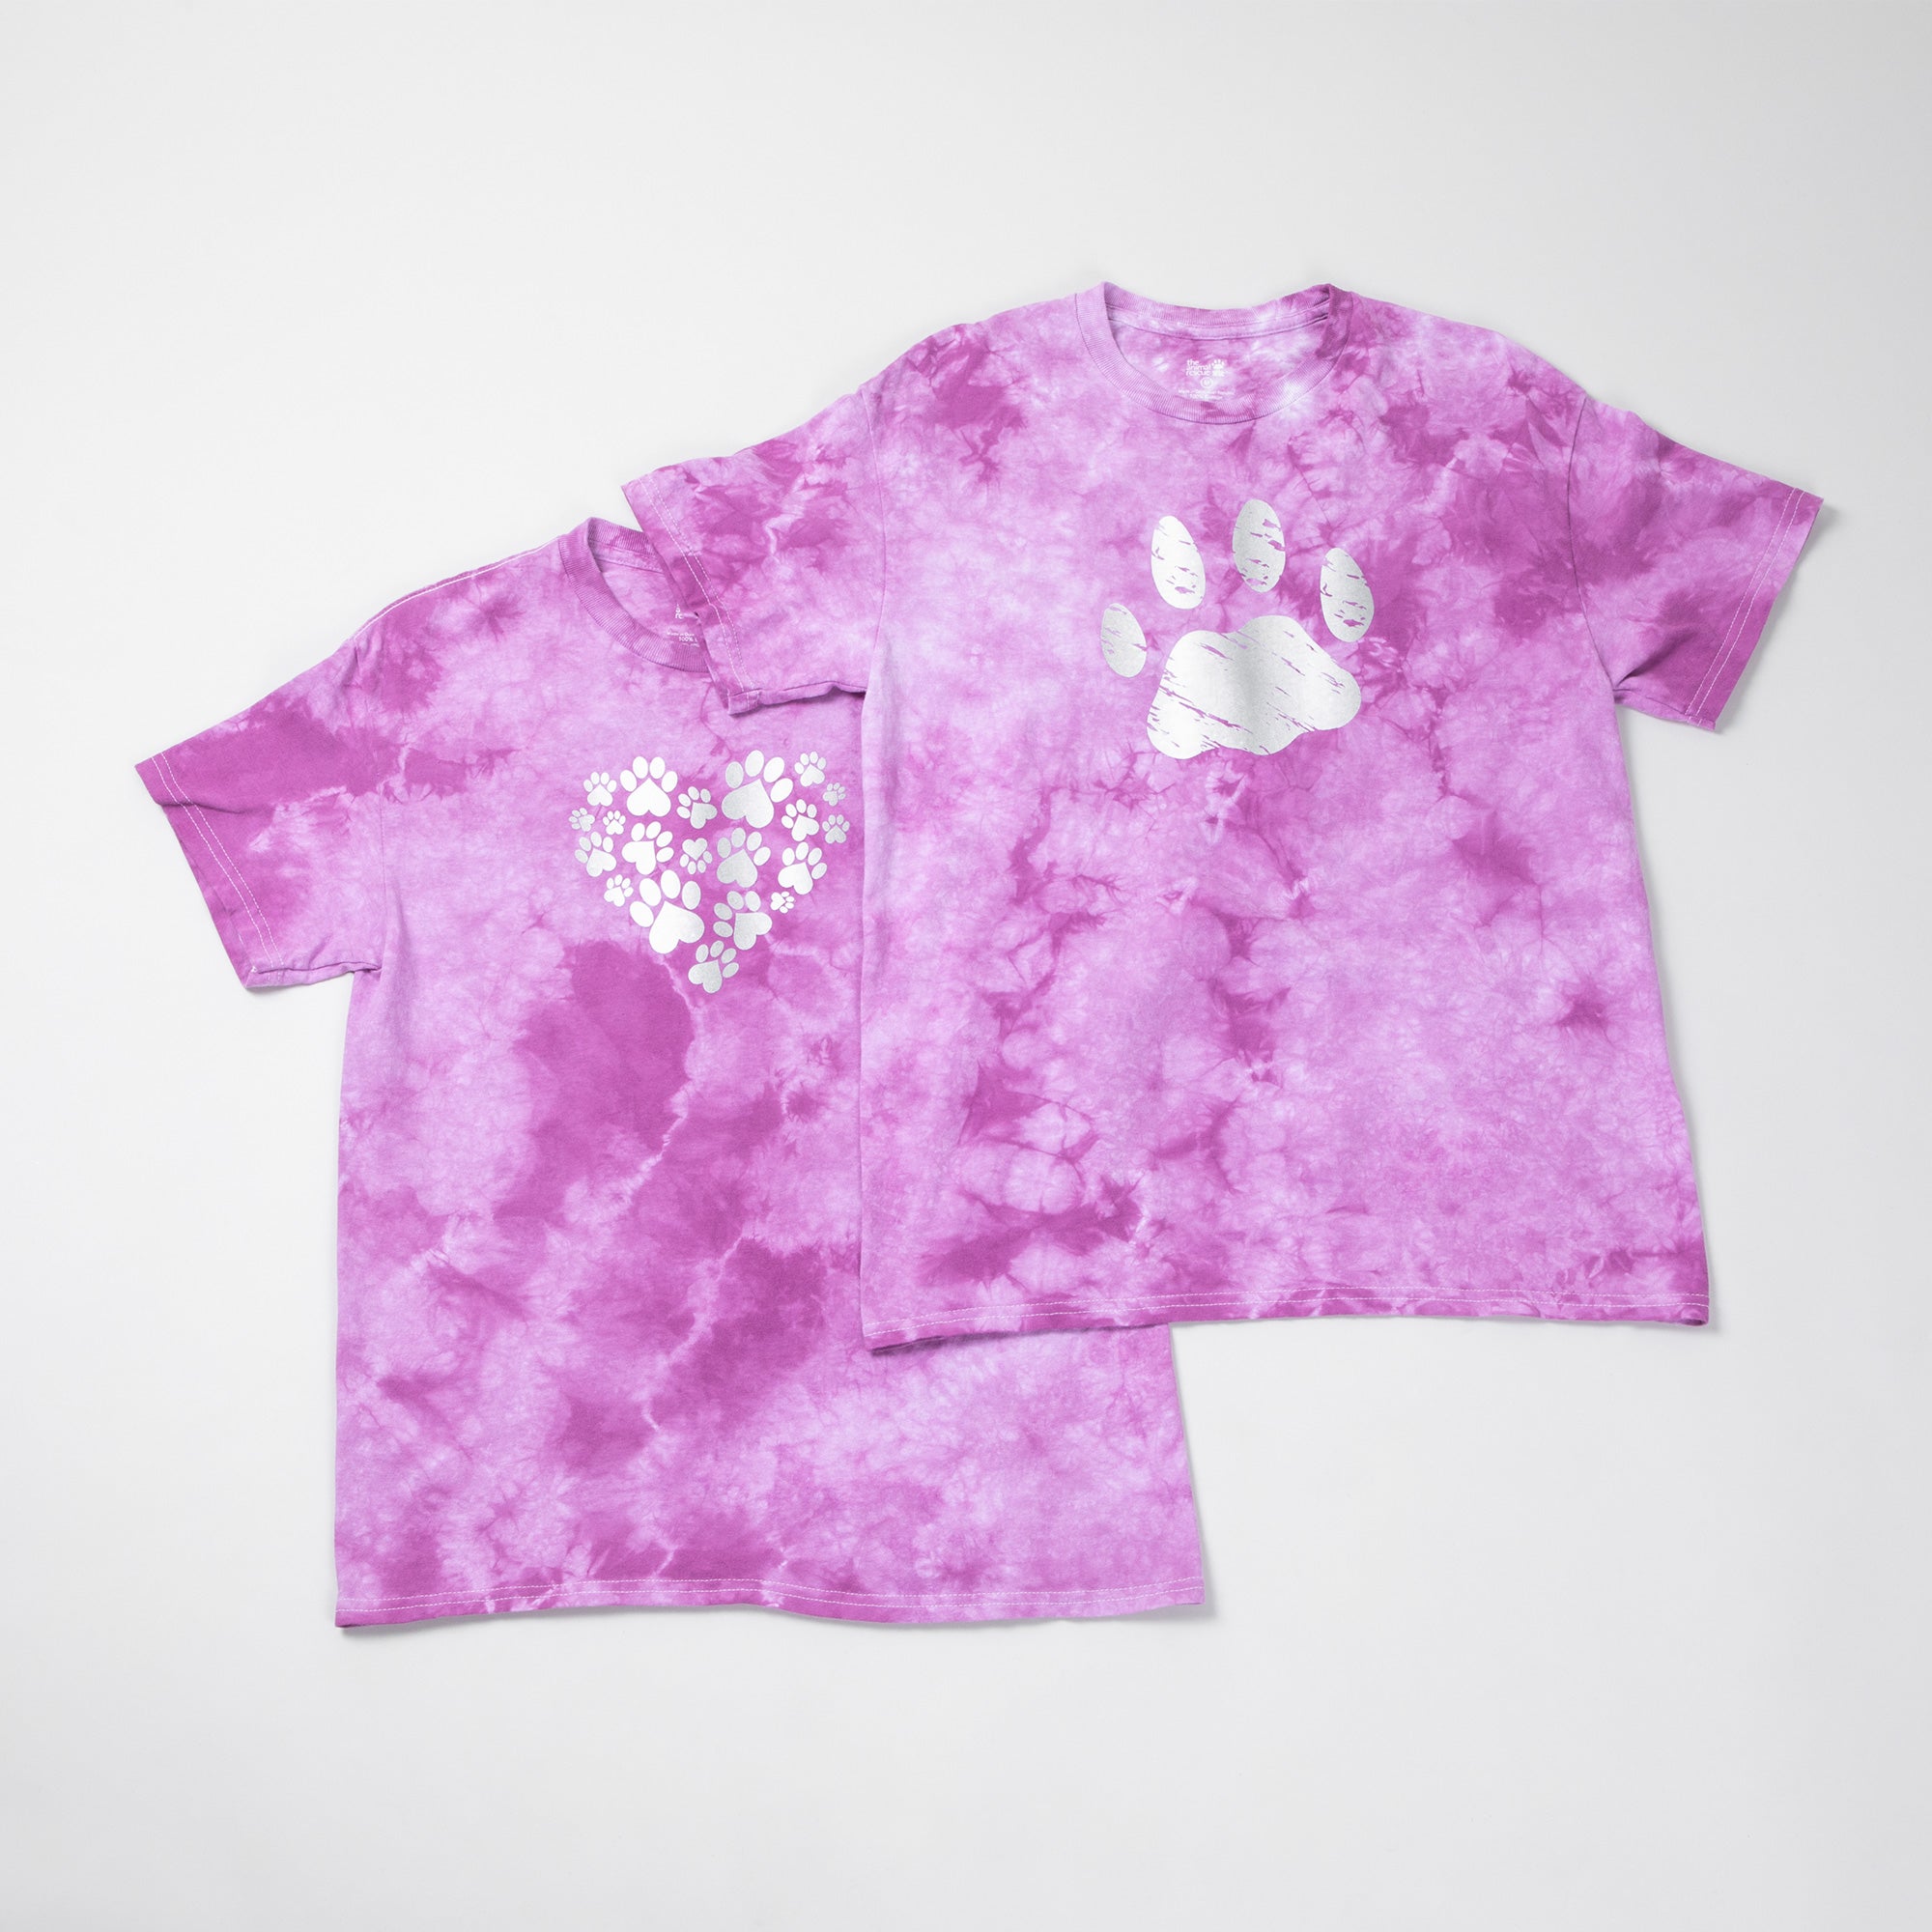 Paw Print Boysenberry Tie-Dye T-Shirt - Heart Paws - L